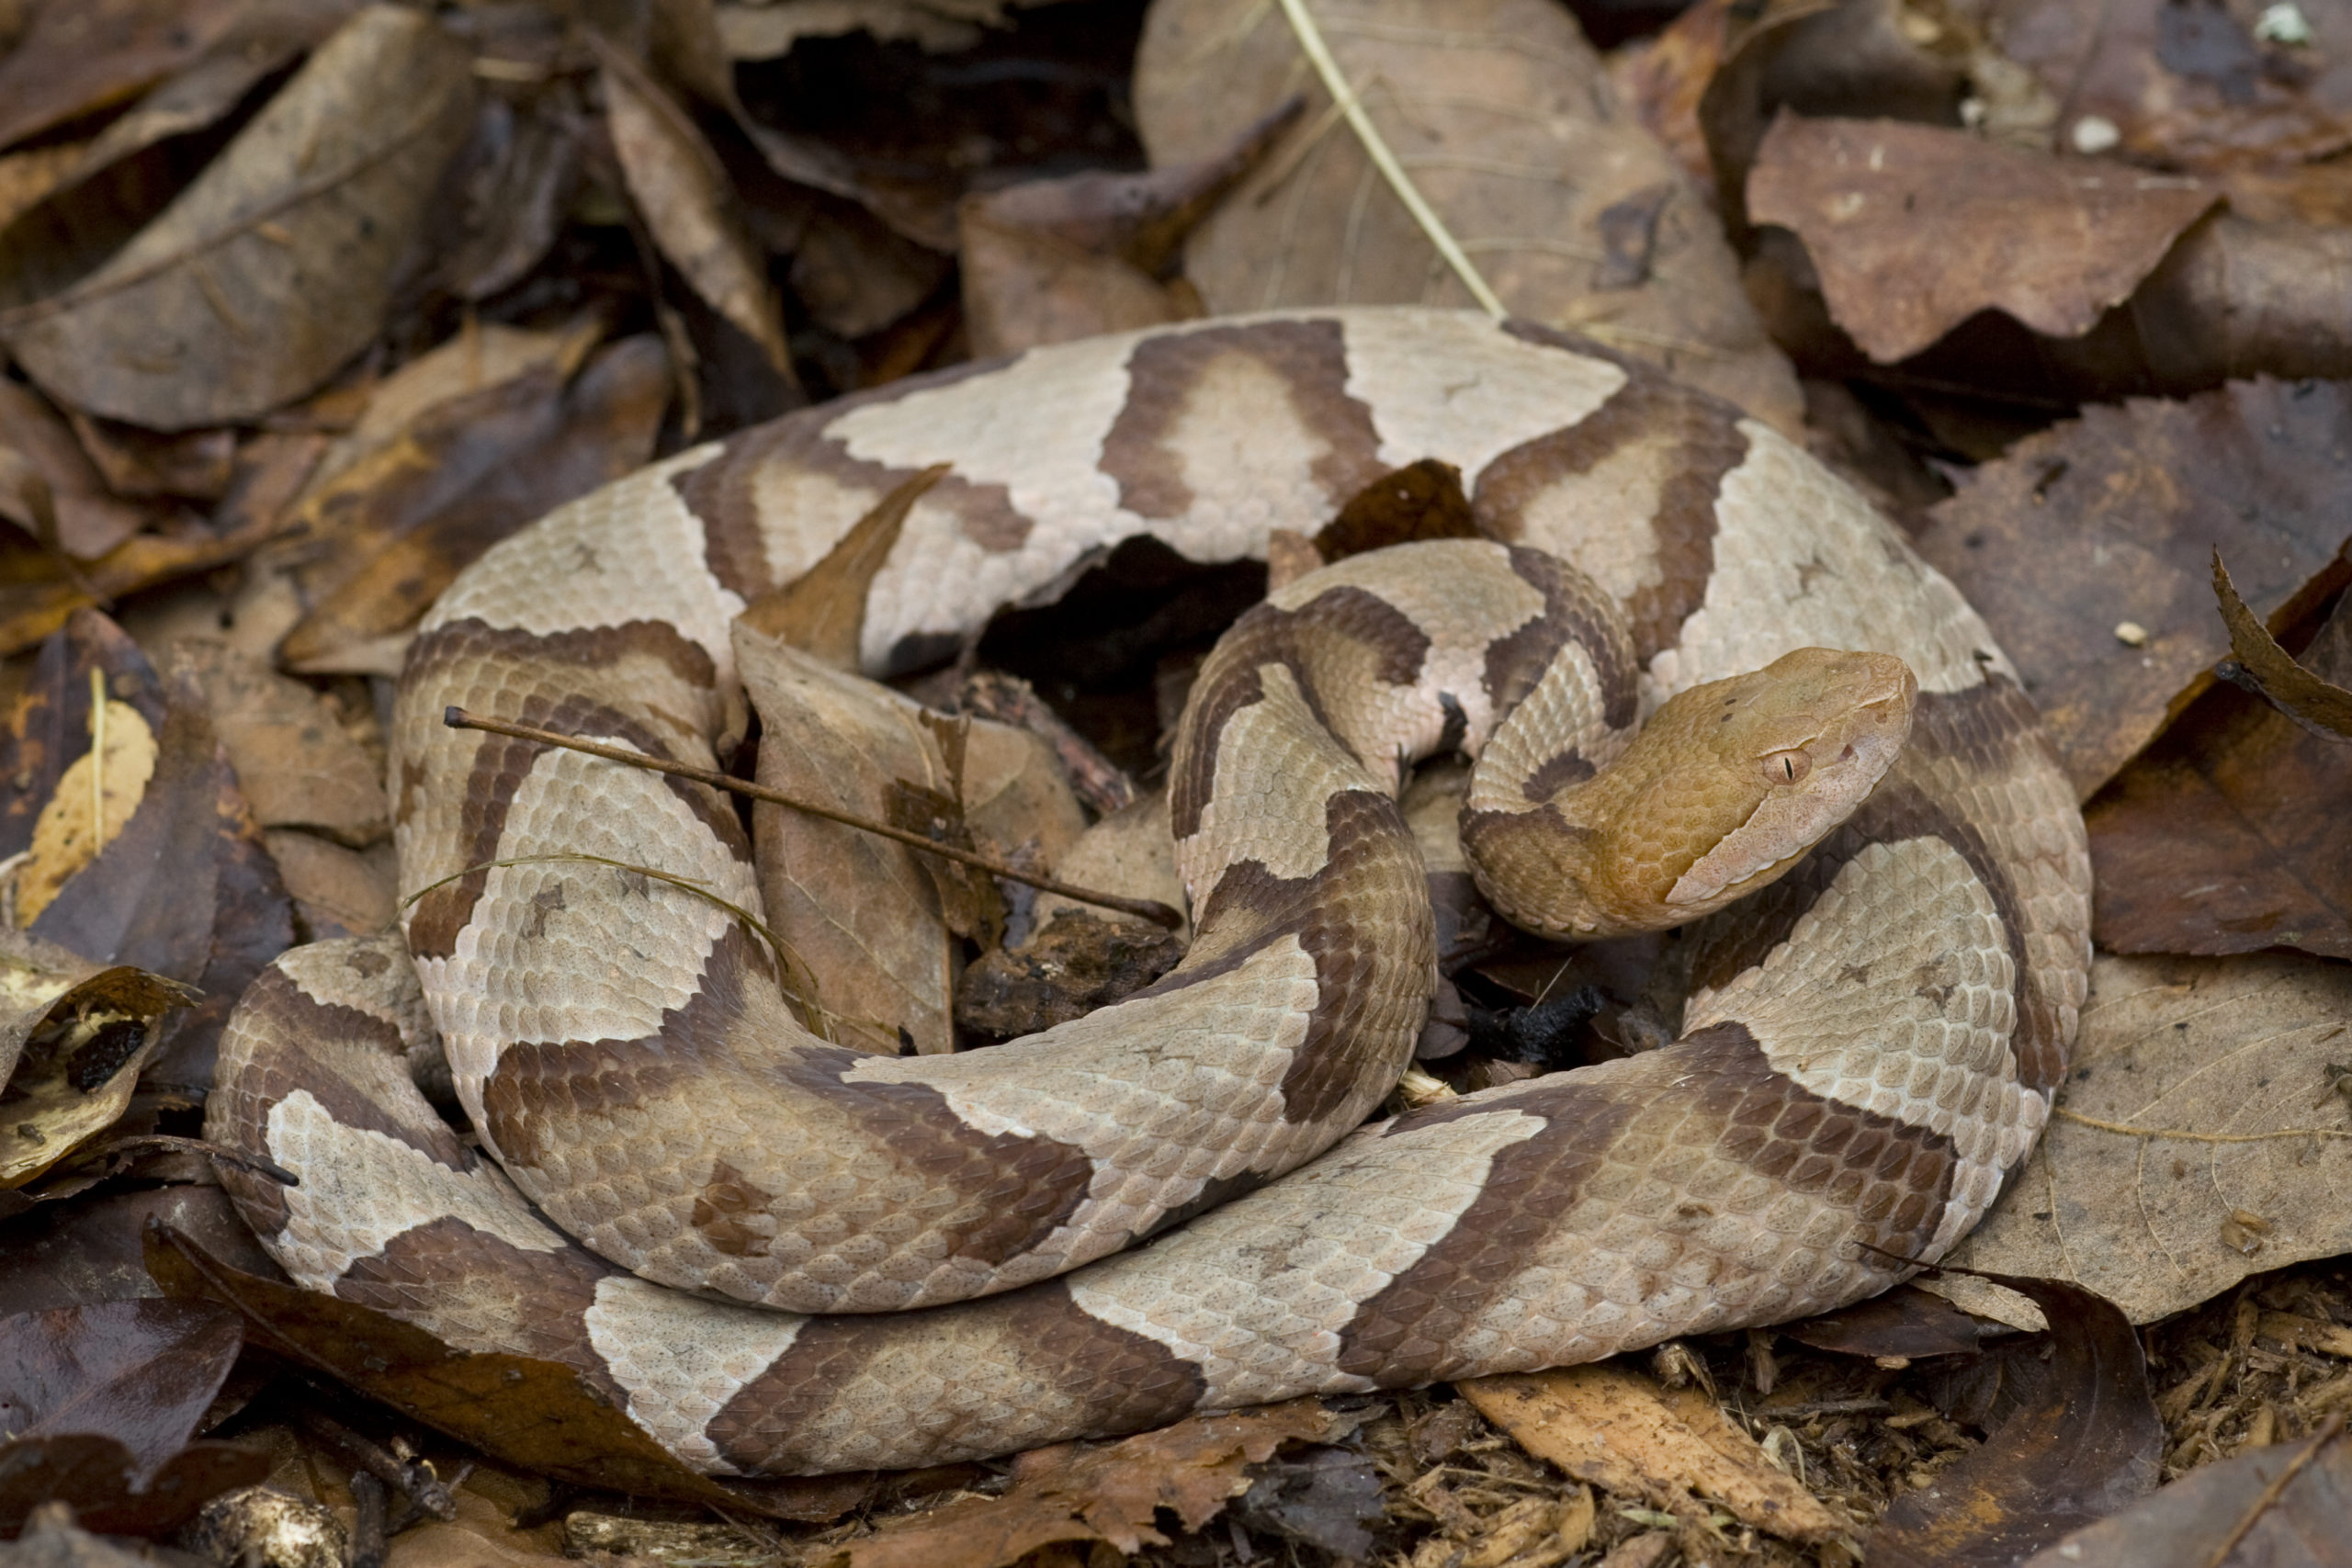 A venomous copperhead snake ready to strike. 